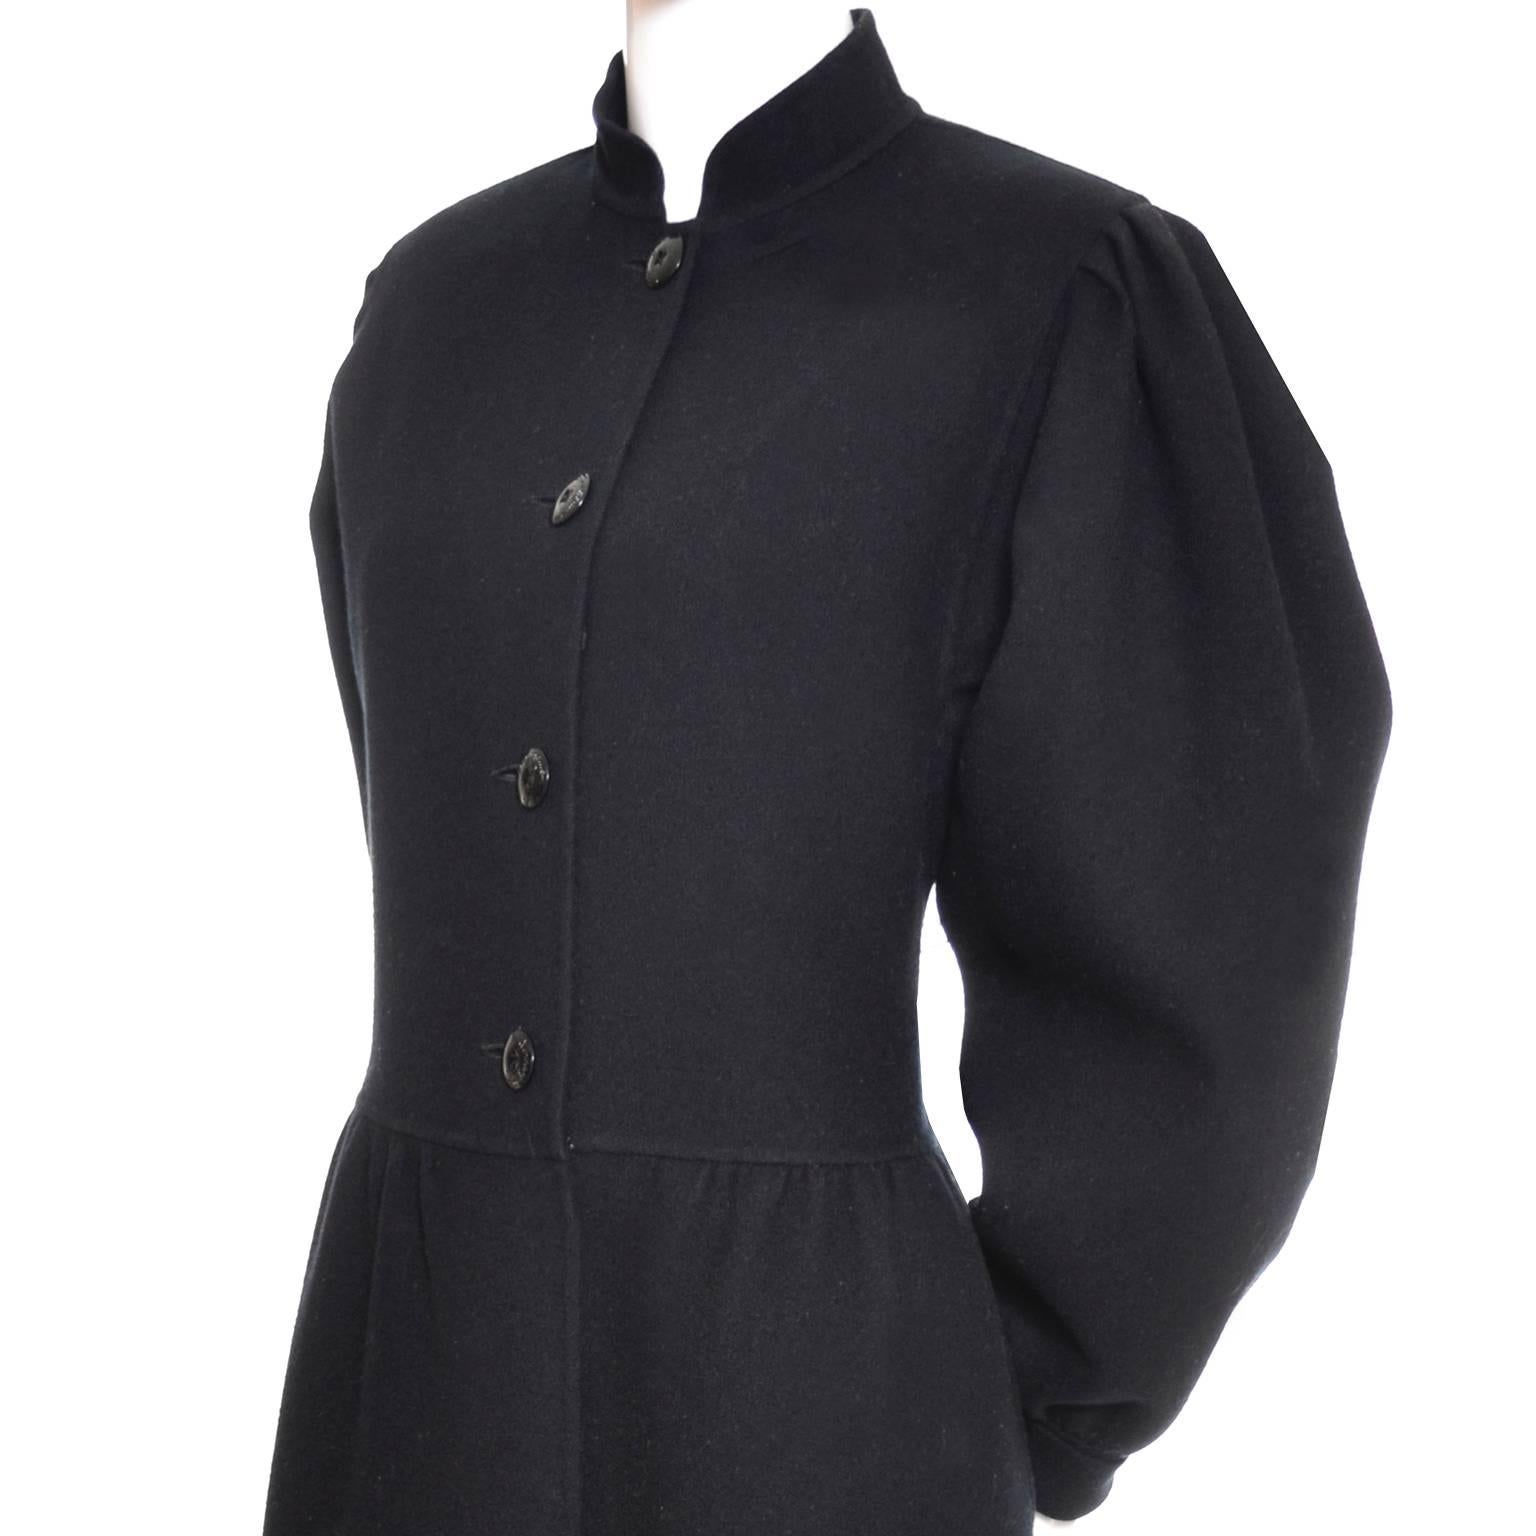 C'est une magnifique robe manteau en laine noire vintage de Salvatore Ferragamo.  Il peut être porté comme un manteau si vous n'avez pas peur de le glisser sur votre tête.  J'adore le col mandarin, et il est non doublé avec des poches latérales et